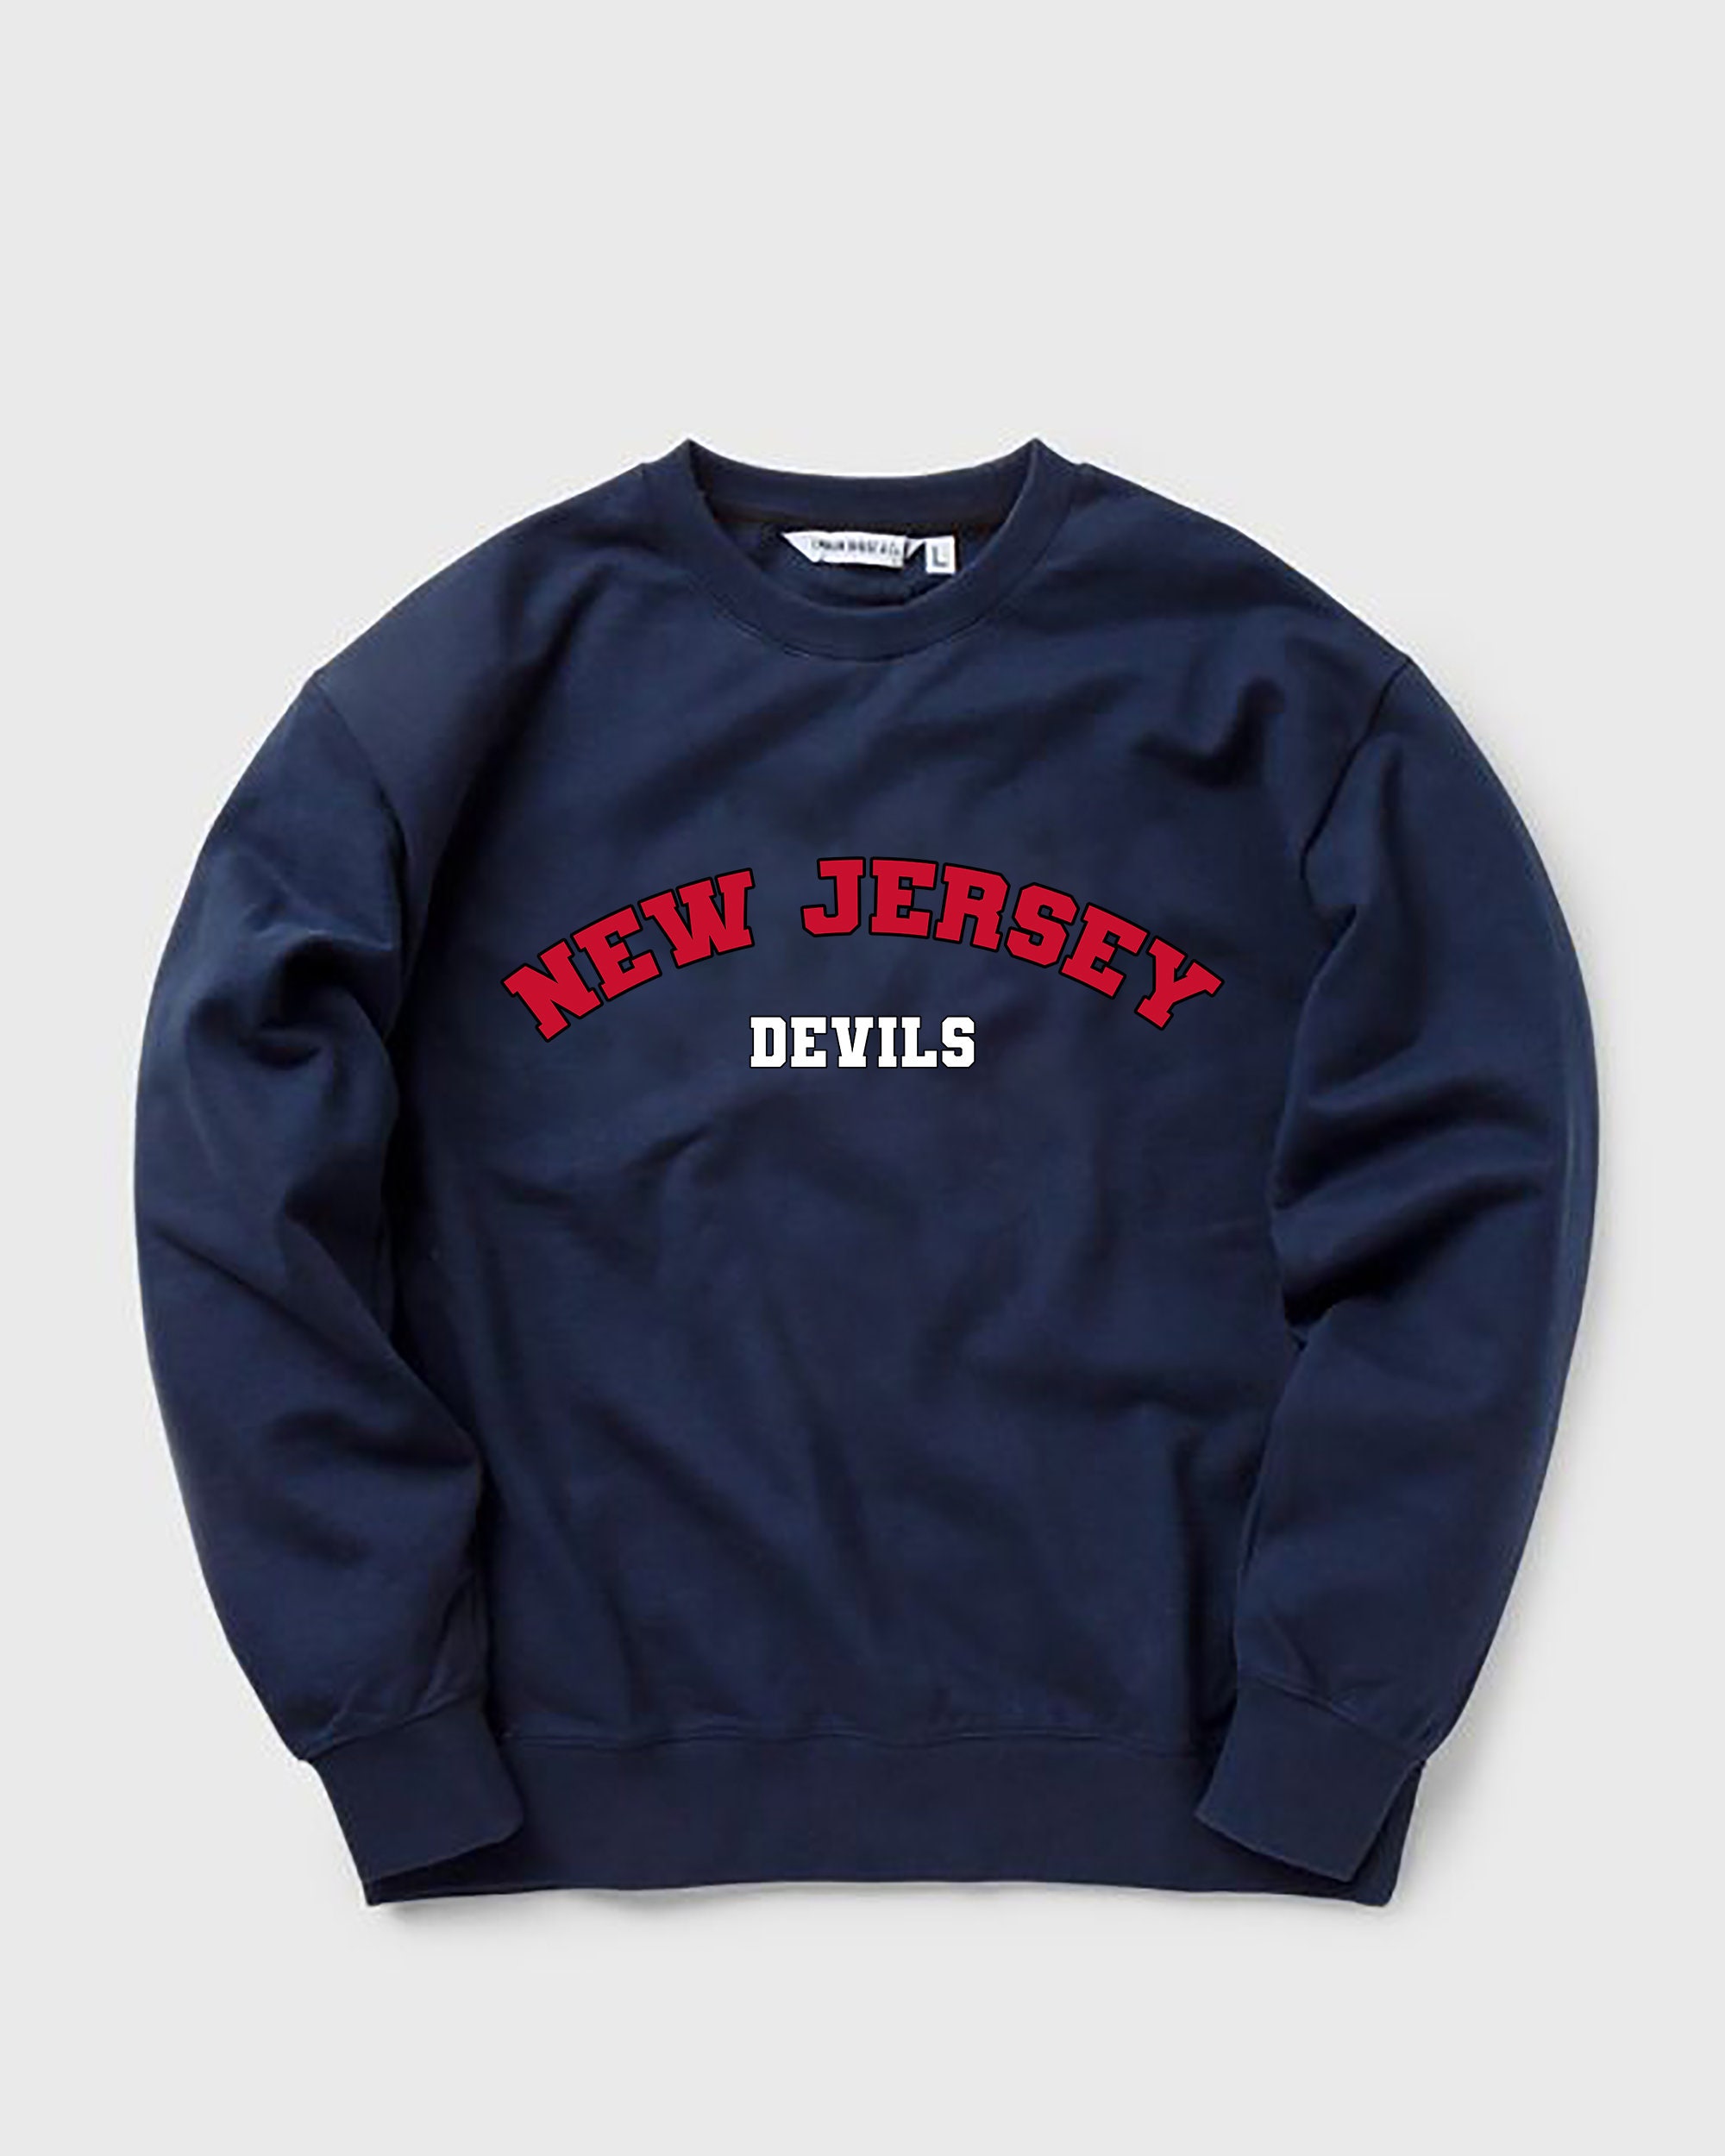 Unisex Adult Size XL New Jersey Devils NHL Fan Apparel & Souvenirs